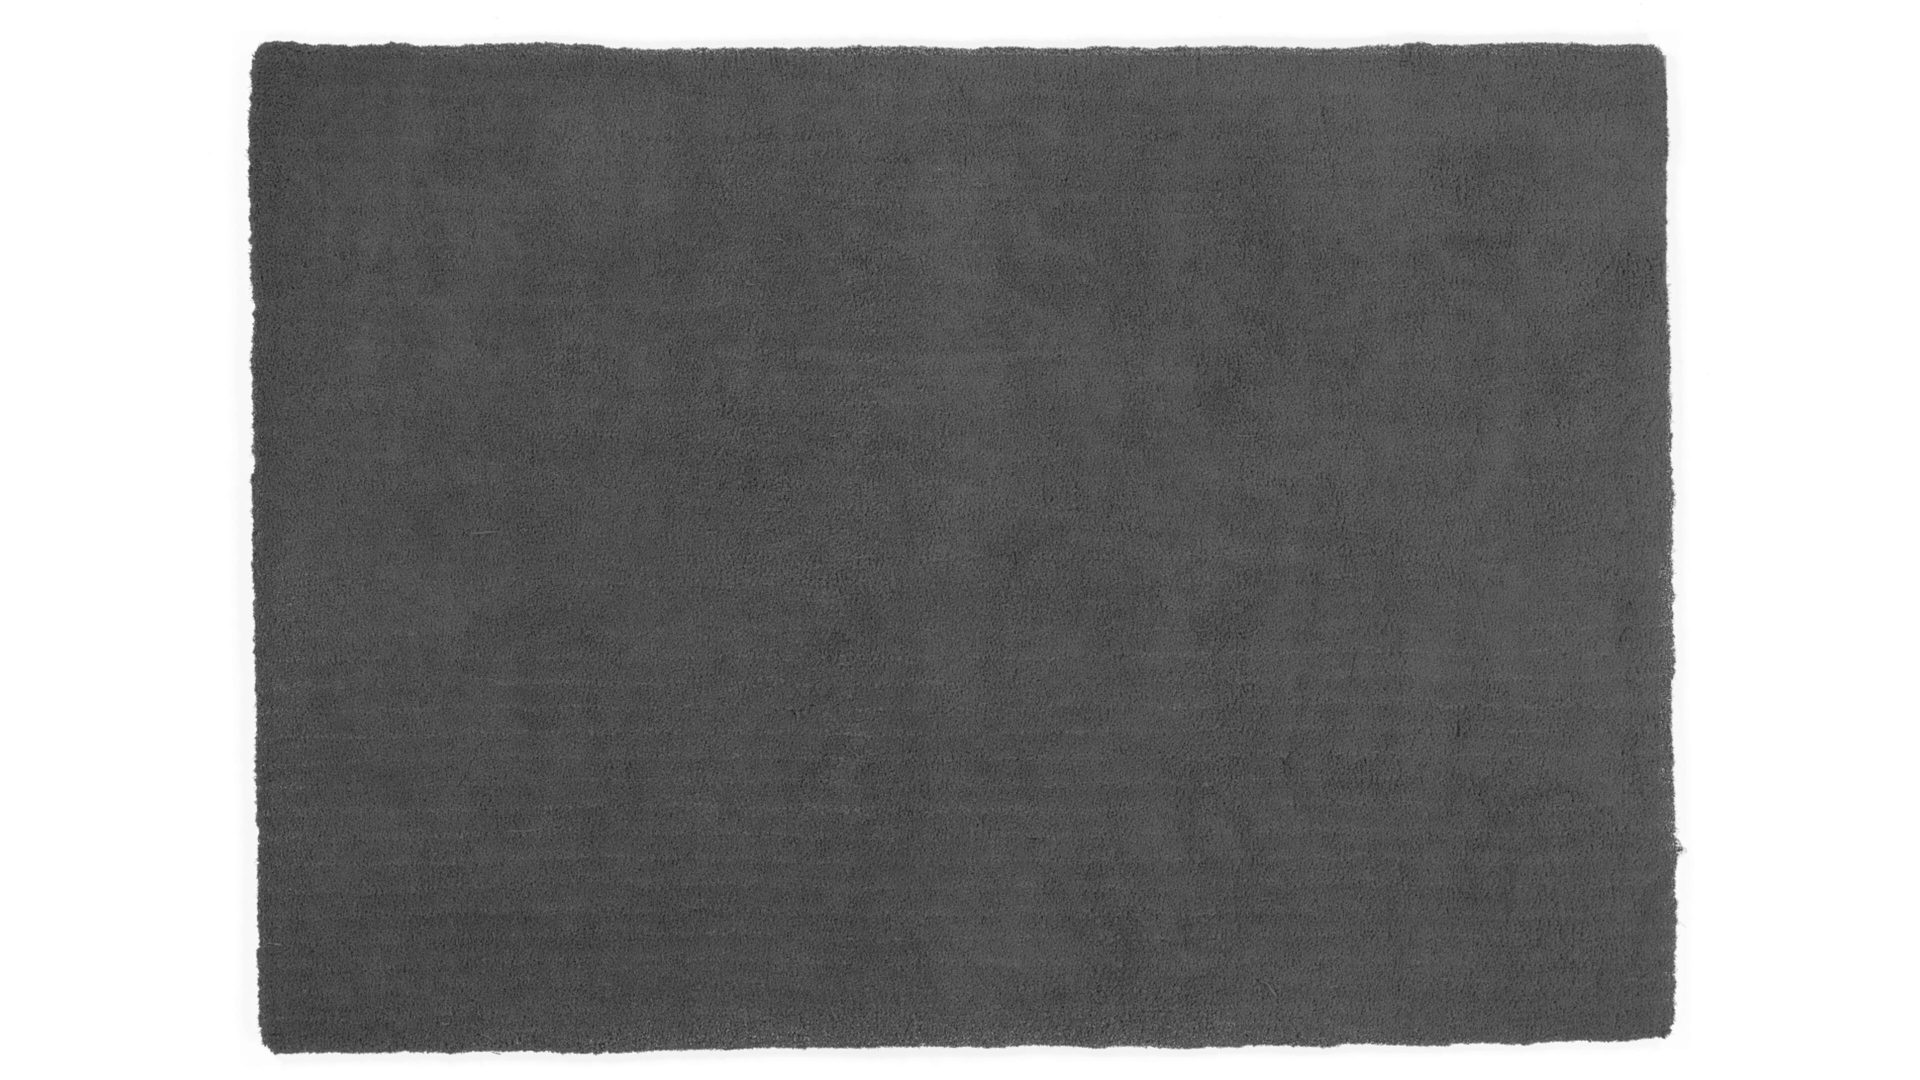 Hochflorteppich Oci aus Kunstfaser in Schwarz Hochflorteppich Soft Dream für Ihre Wohnaccessoires dunkelgraue Kunstfaser – ca. 160 x 230 cm